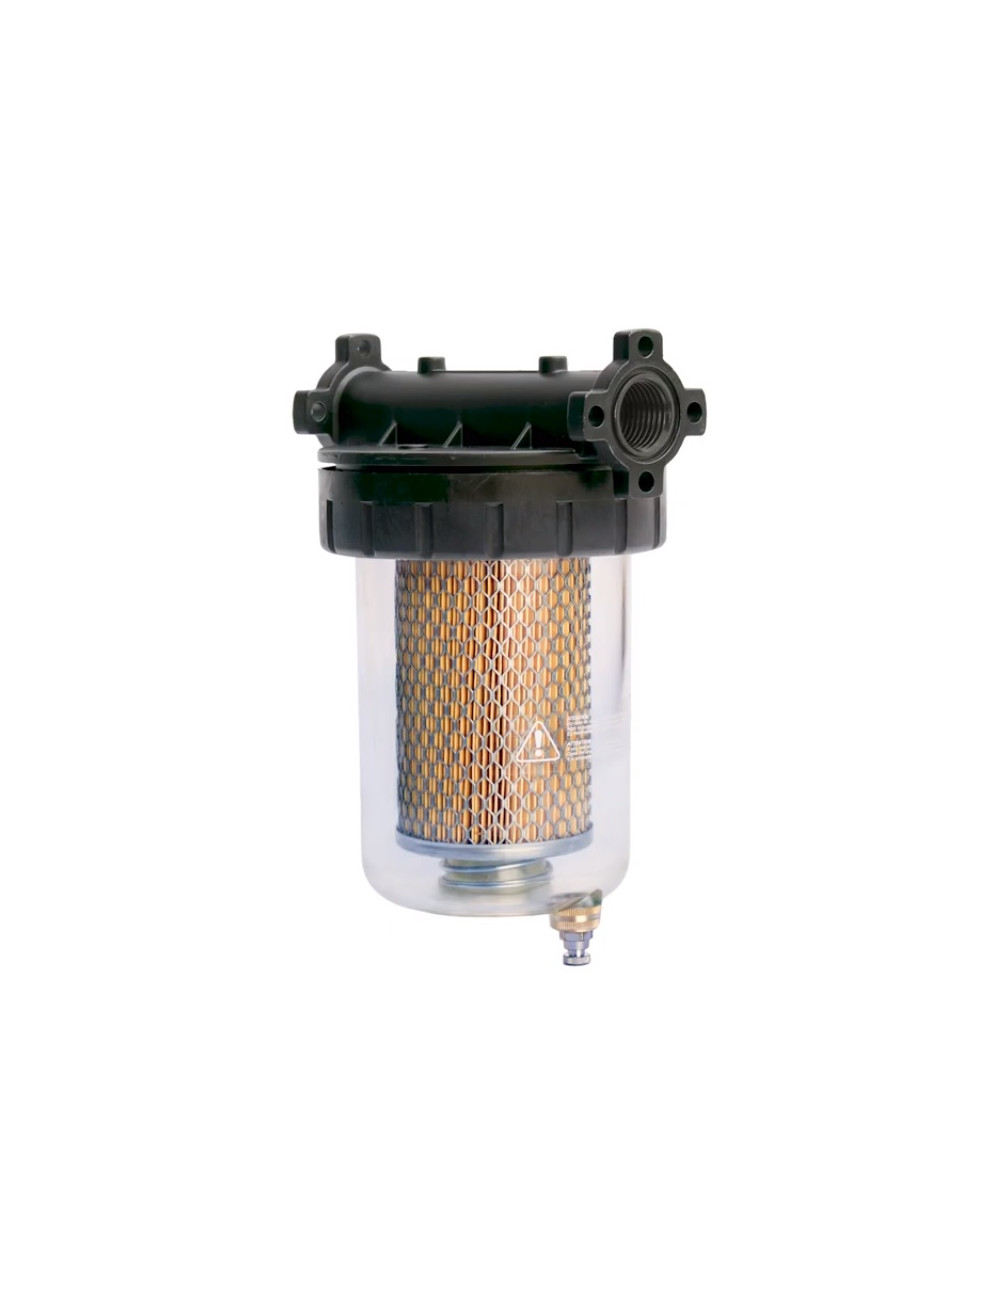 Filtro gasoil separador de agua e impurezas GESPASA FG-100 Caudal 110 L/min  Absorbente agua Absorbente agua Micras 5 µm